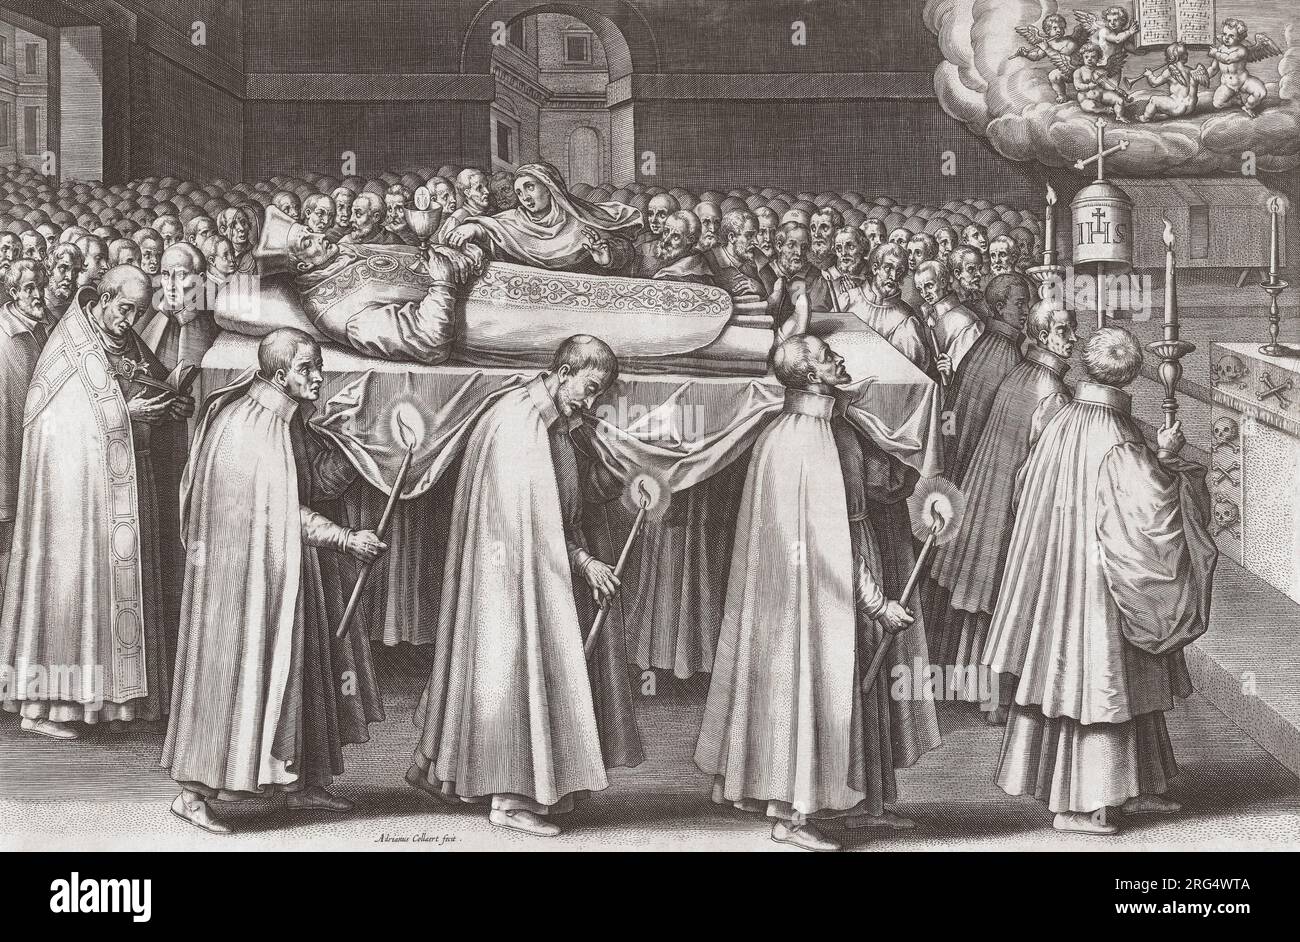 L'enterrement d'Ignace de Loyola, 1491 - 1556. Prêtre catholique espagnol, co-fondateur de la Compagnie de Jésus (les Jésuites) et premier supérieur général de l’ordre. D'après une estampe d'Adriaen Collaert d'après le tableau de Juan de Mesa. Banque D'Images